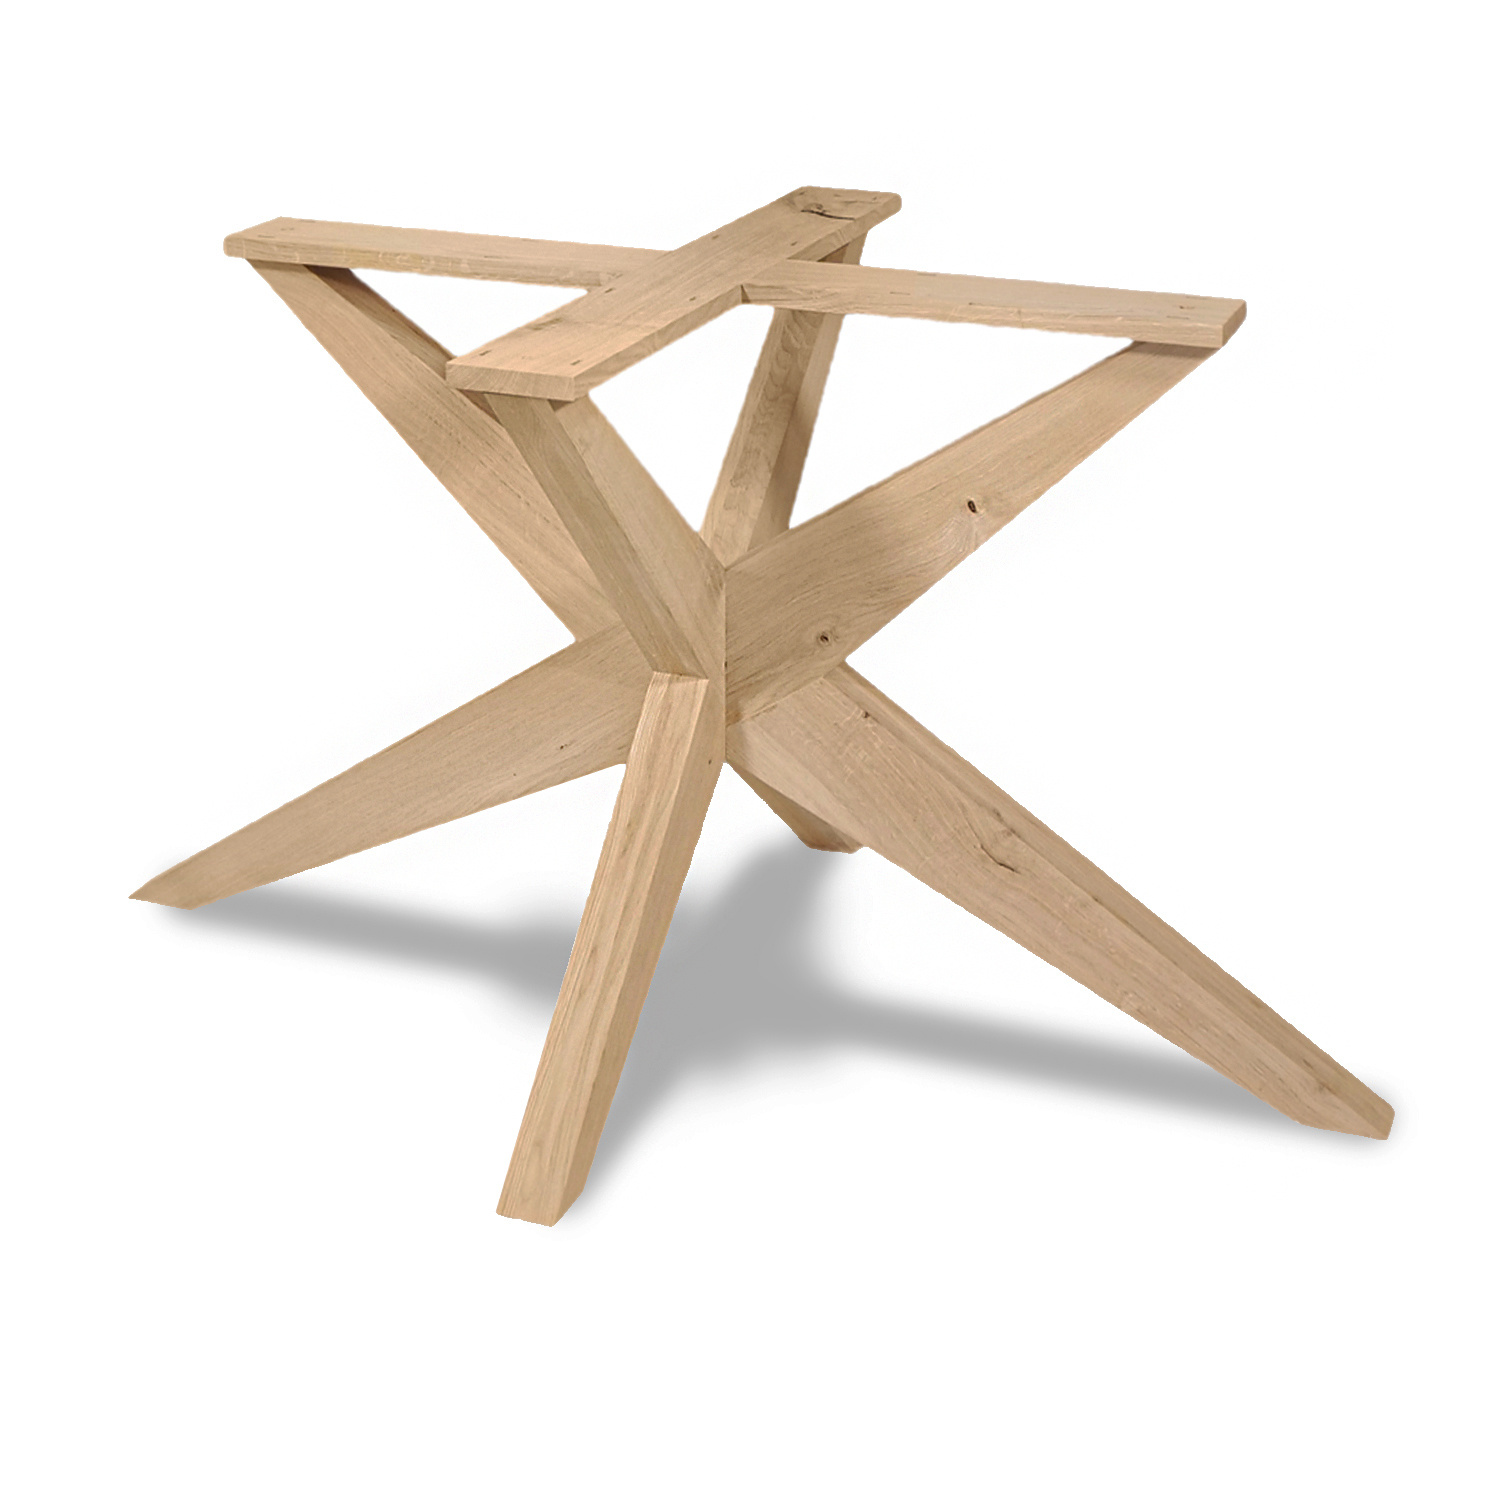  Tischgestell Eiche Doppelt X  - schräge Beine - 130x130 cm  - 72 cm hoch - Eichenholz Rustikal - massives Tischunterstell rund (Mittelfuß) - Künstlich getrocknet HF 12%